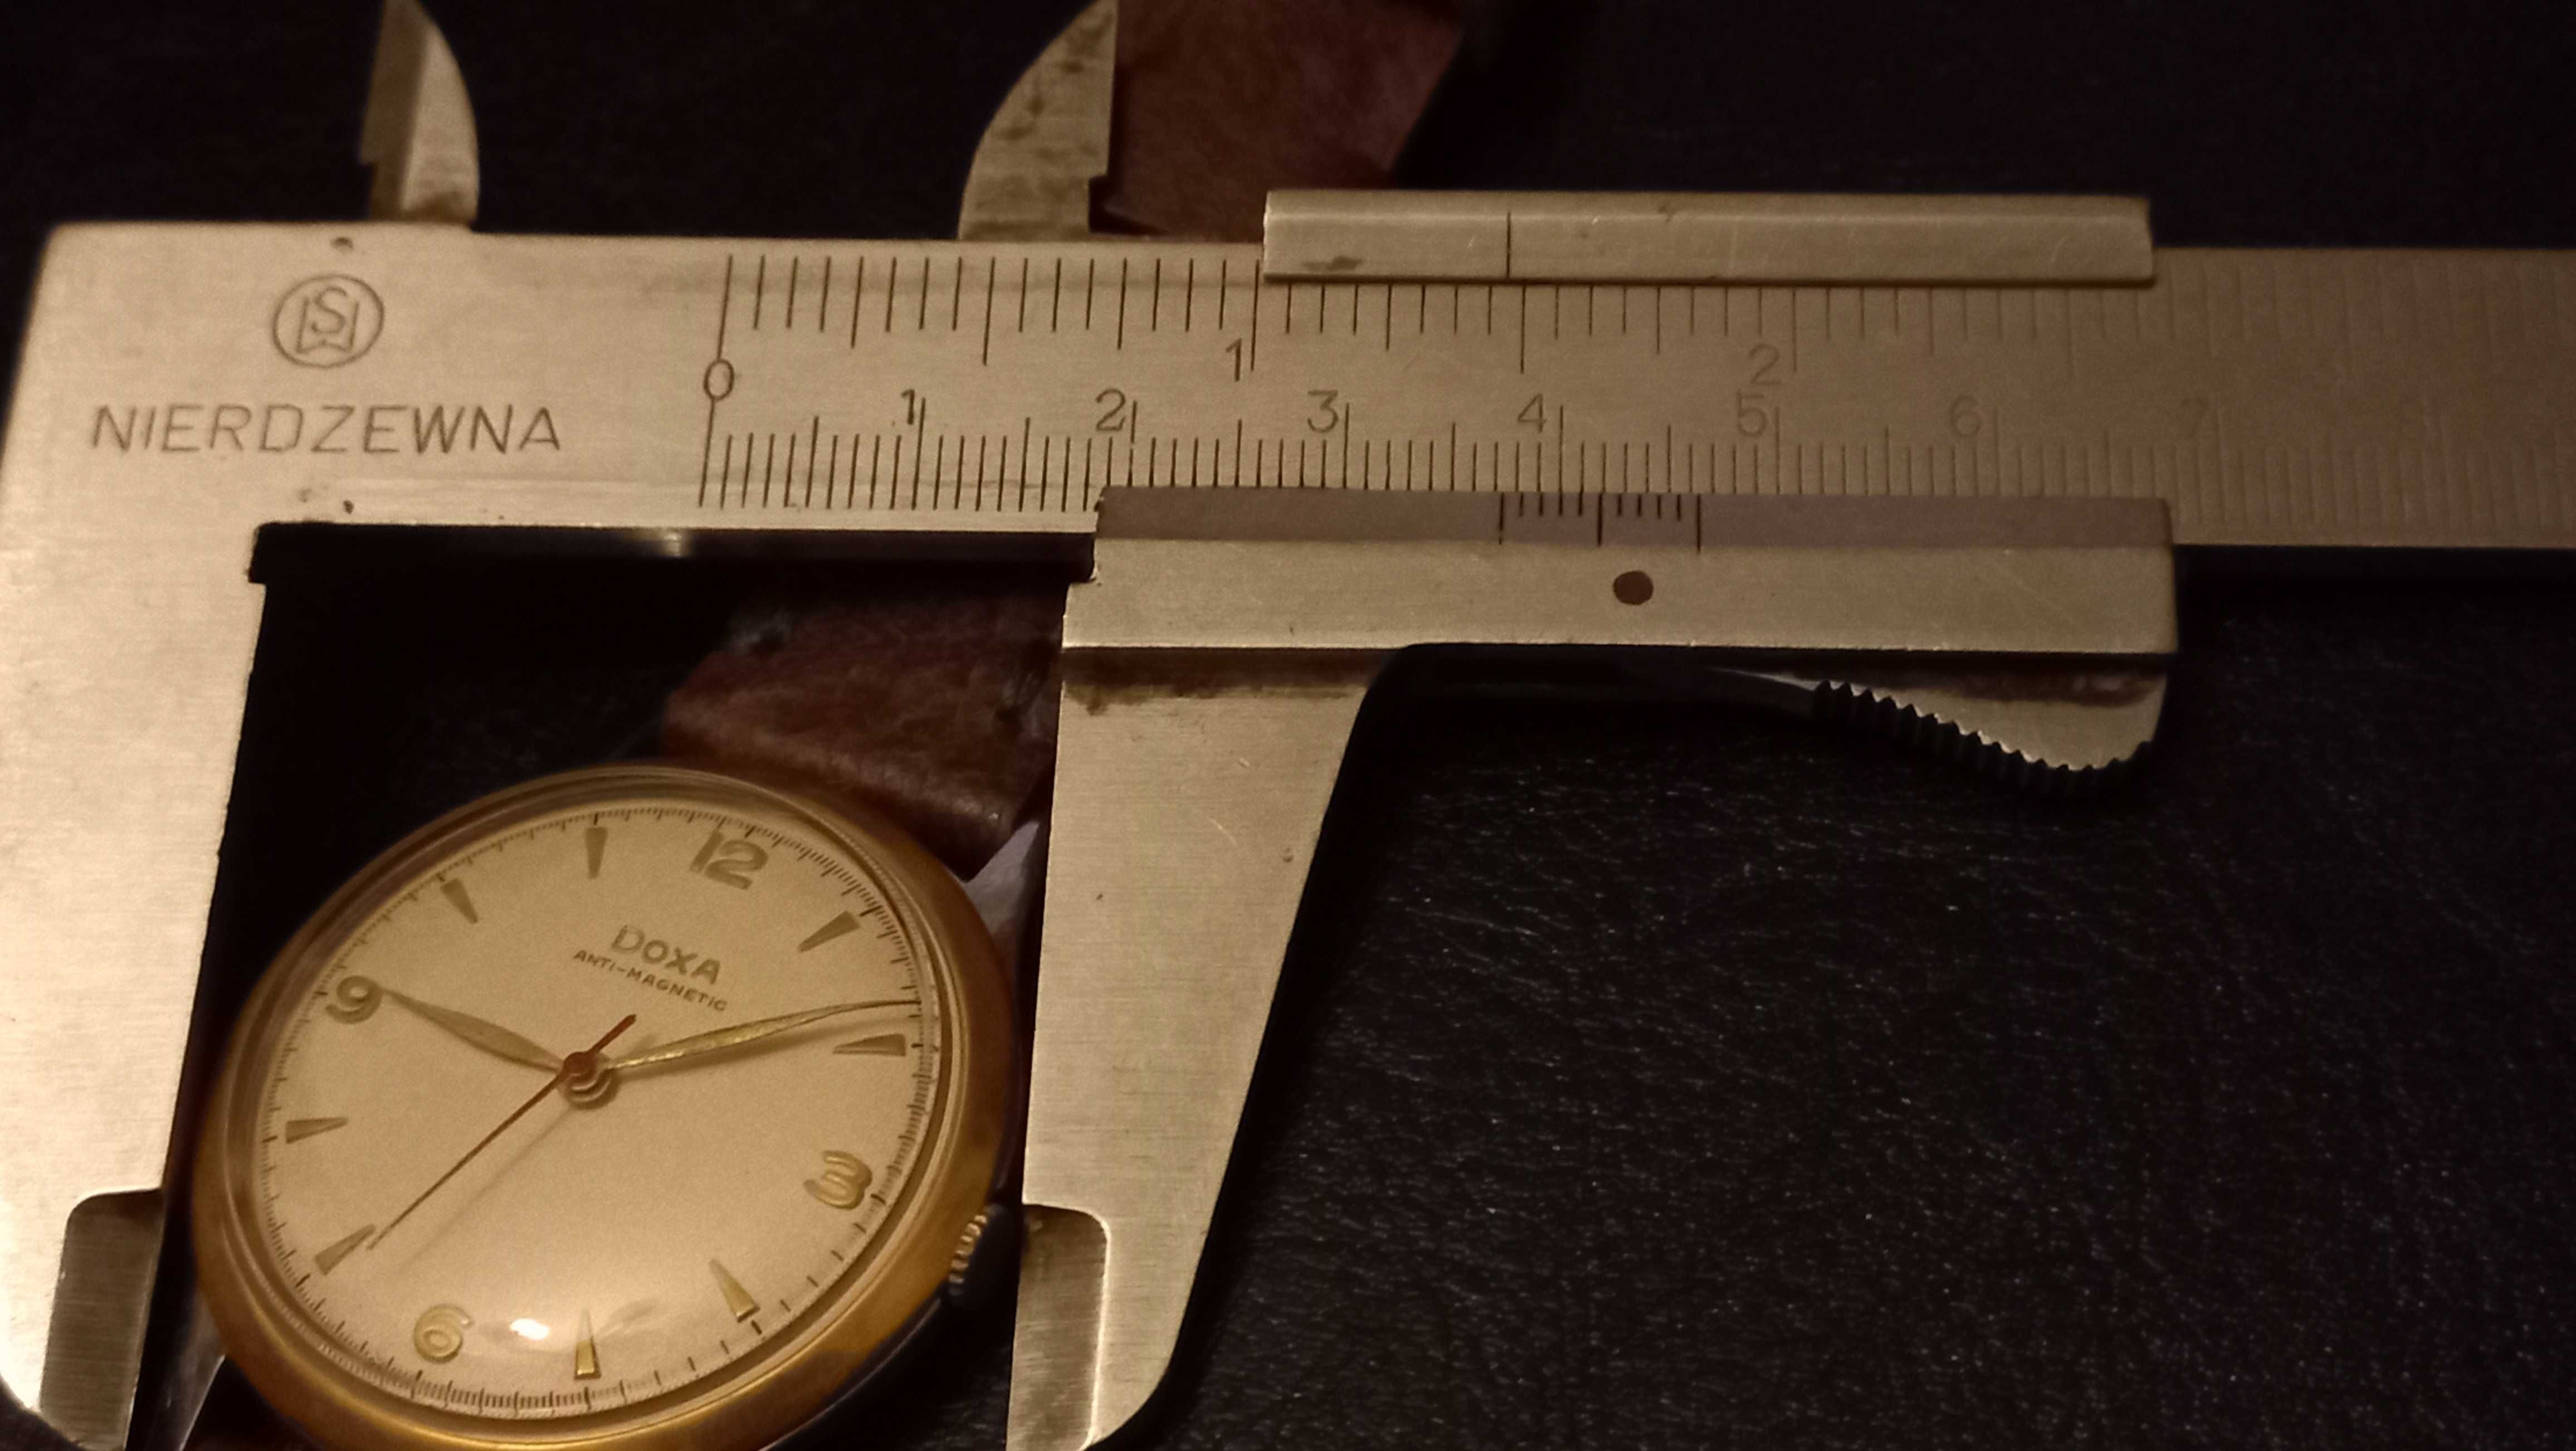 Sprzedam męski zegarek Doxa Antimagnetic duża linia 1955r